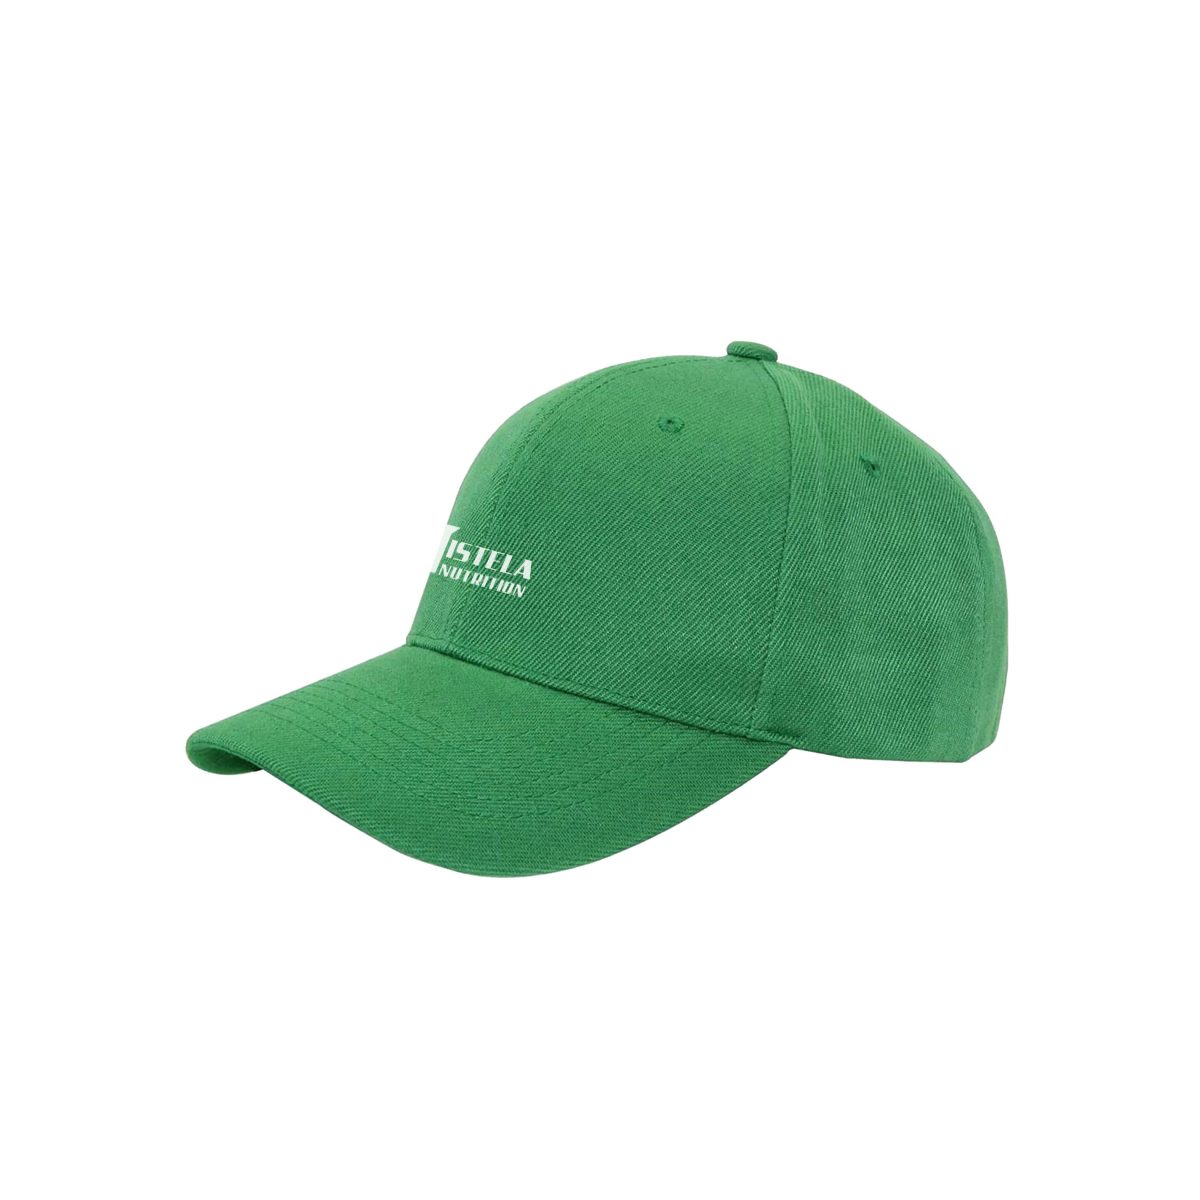 green sun hat